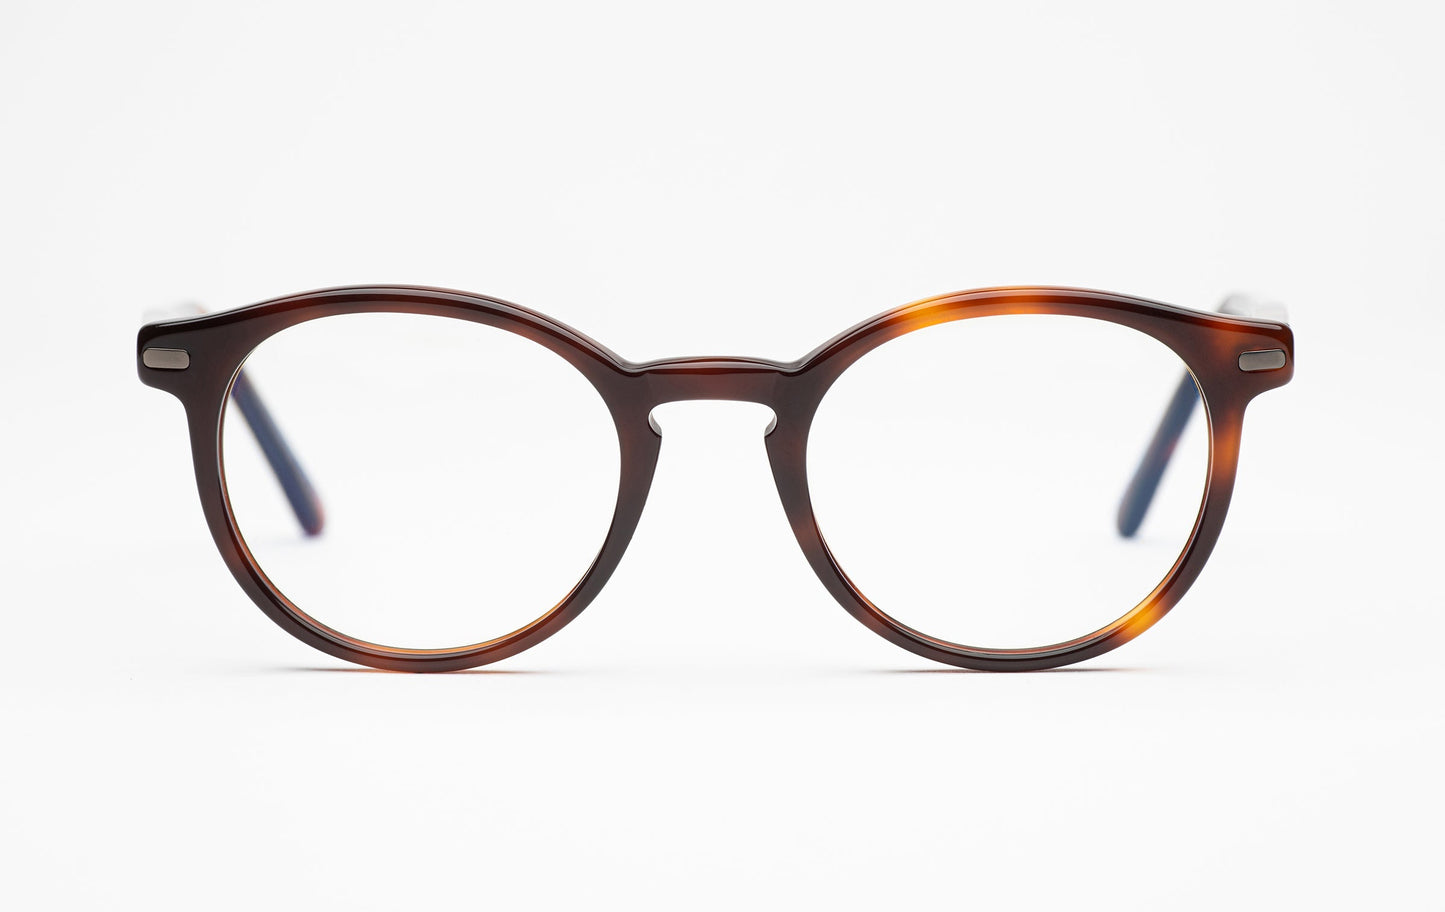 The Traveler 3 | Round Acetate Frame Eyeglasses – Tortoiseshell Designer Prescription Glasses – Low Nose Bridge 